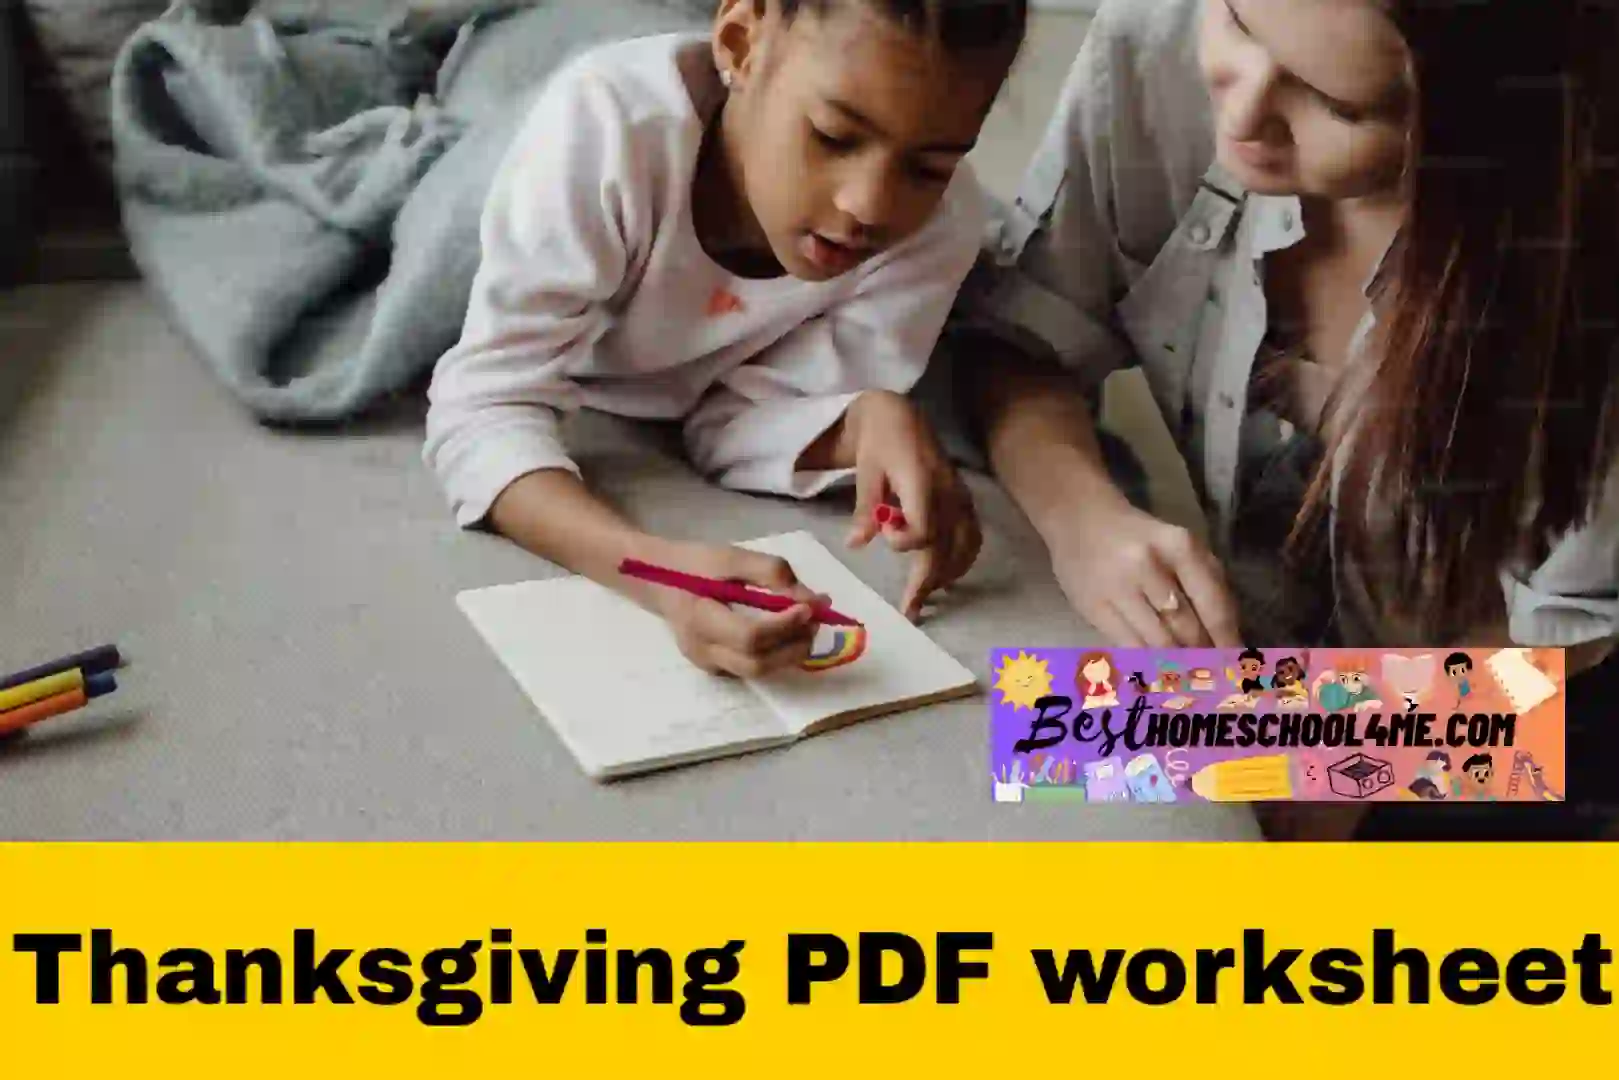 children's thanksgiving worksheets, Printable Thanksgiving Worksheets For 5th grade